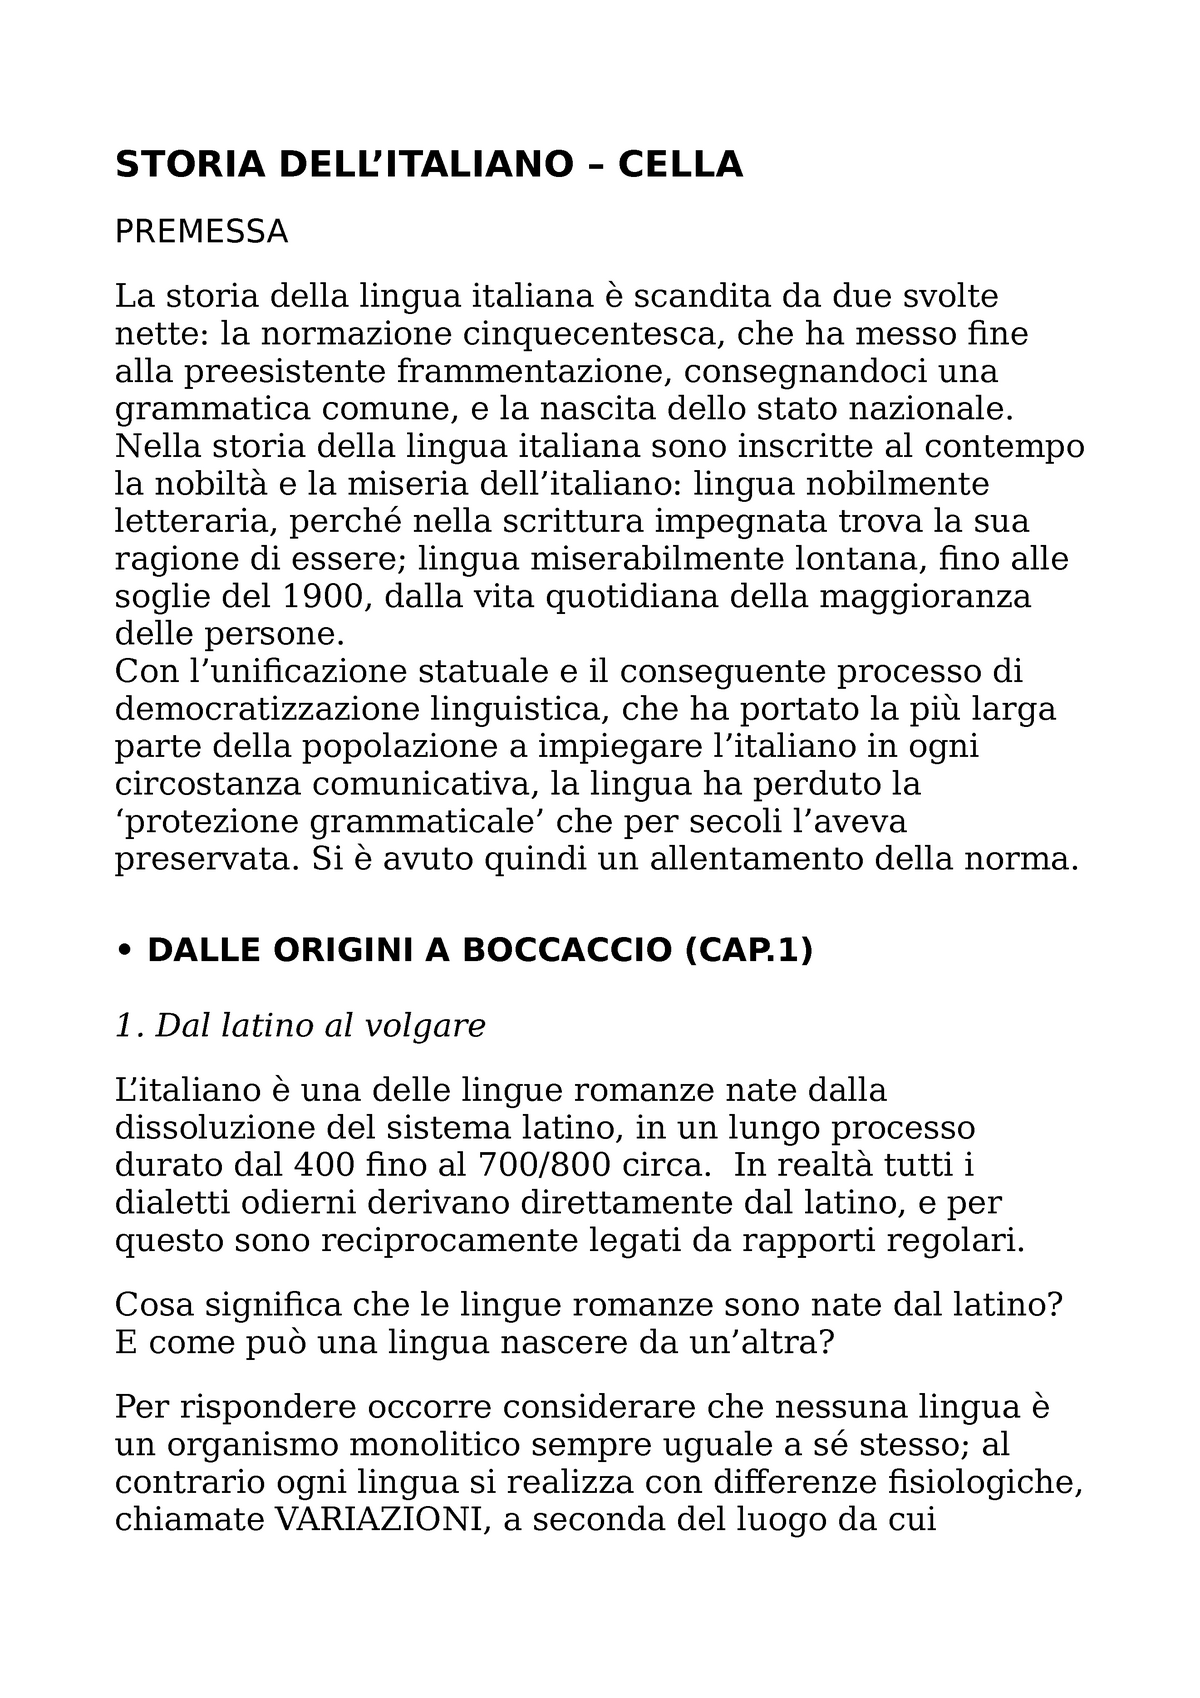 Storia della lingua libro Roberta Cella - STORIA CELLA PREMESSA La ...